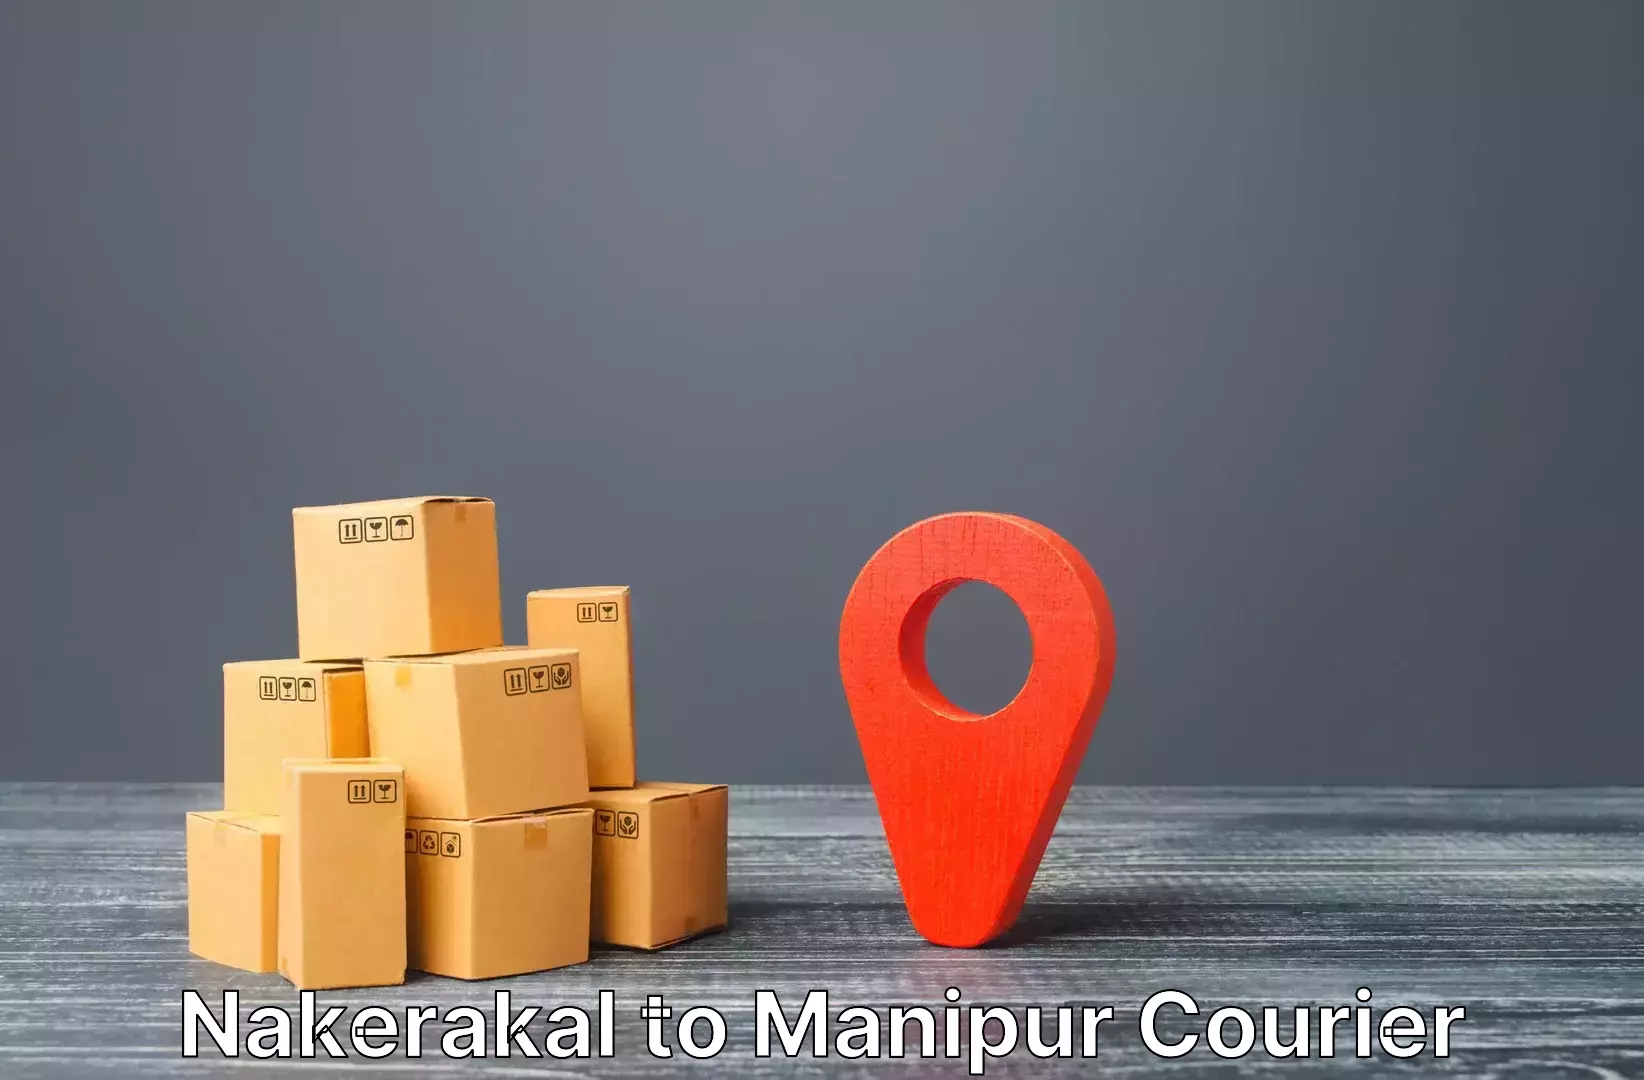 Luggage shipping service Nakerakal to Ukhrul